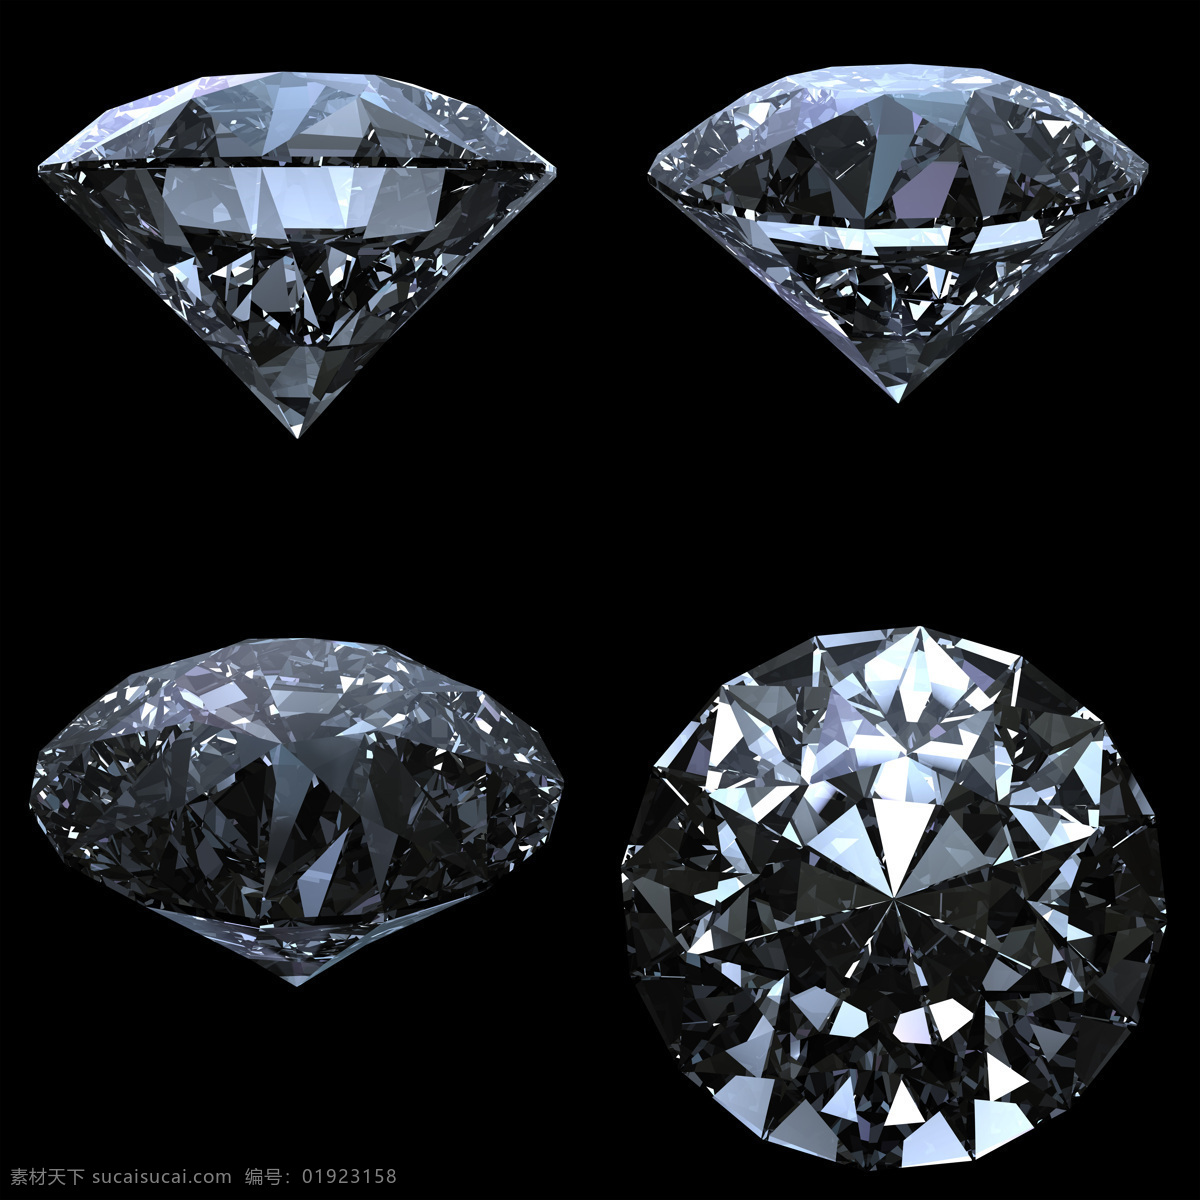 钻石首饰摄影 钻石 宝石 钻石珠宝 珠宝首饰 珠宝服饰 生活百科 黑色